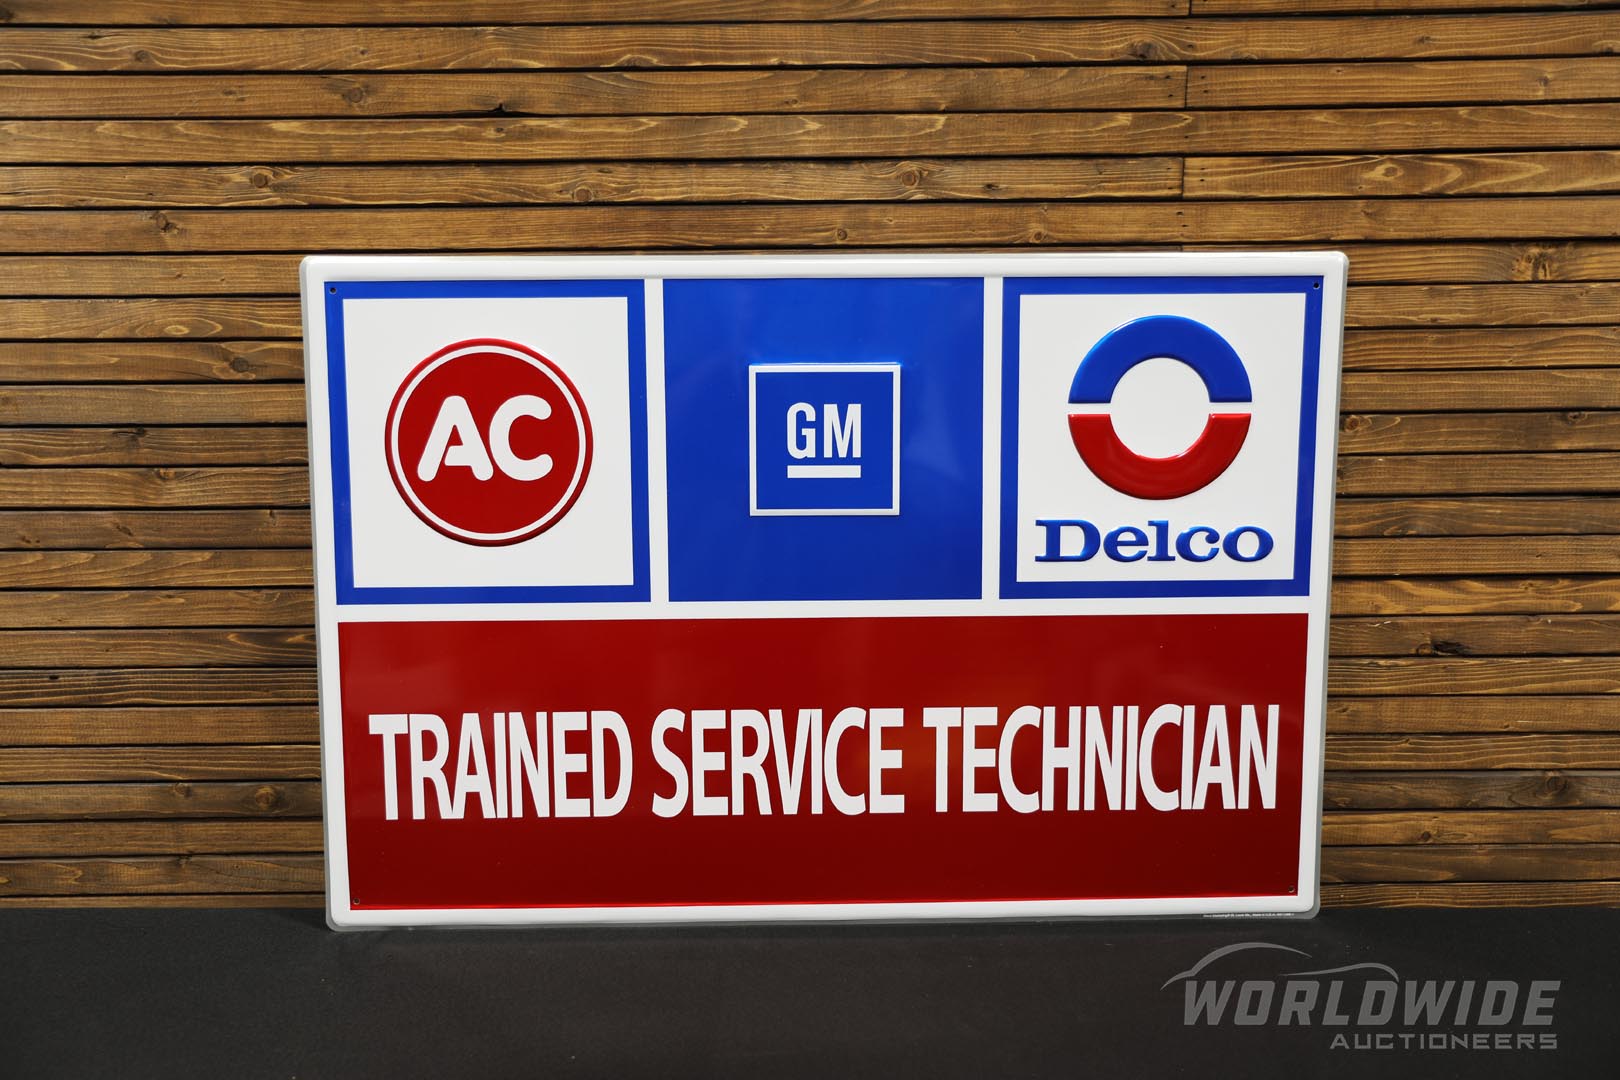 AC GM Delco Trained Service Technician Tin Sign